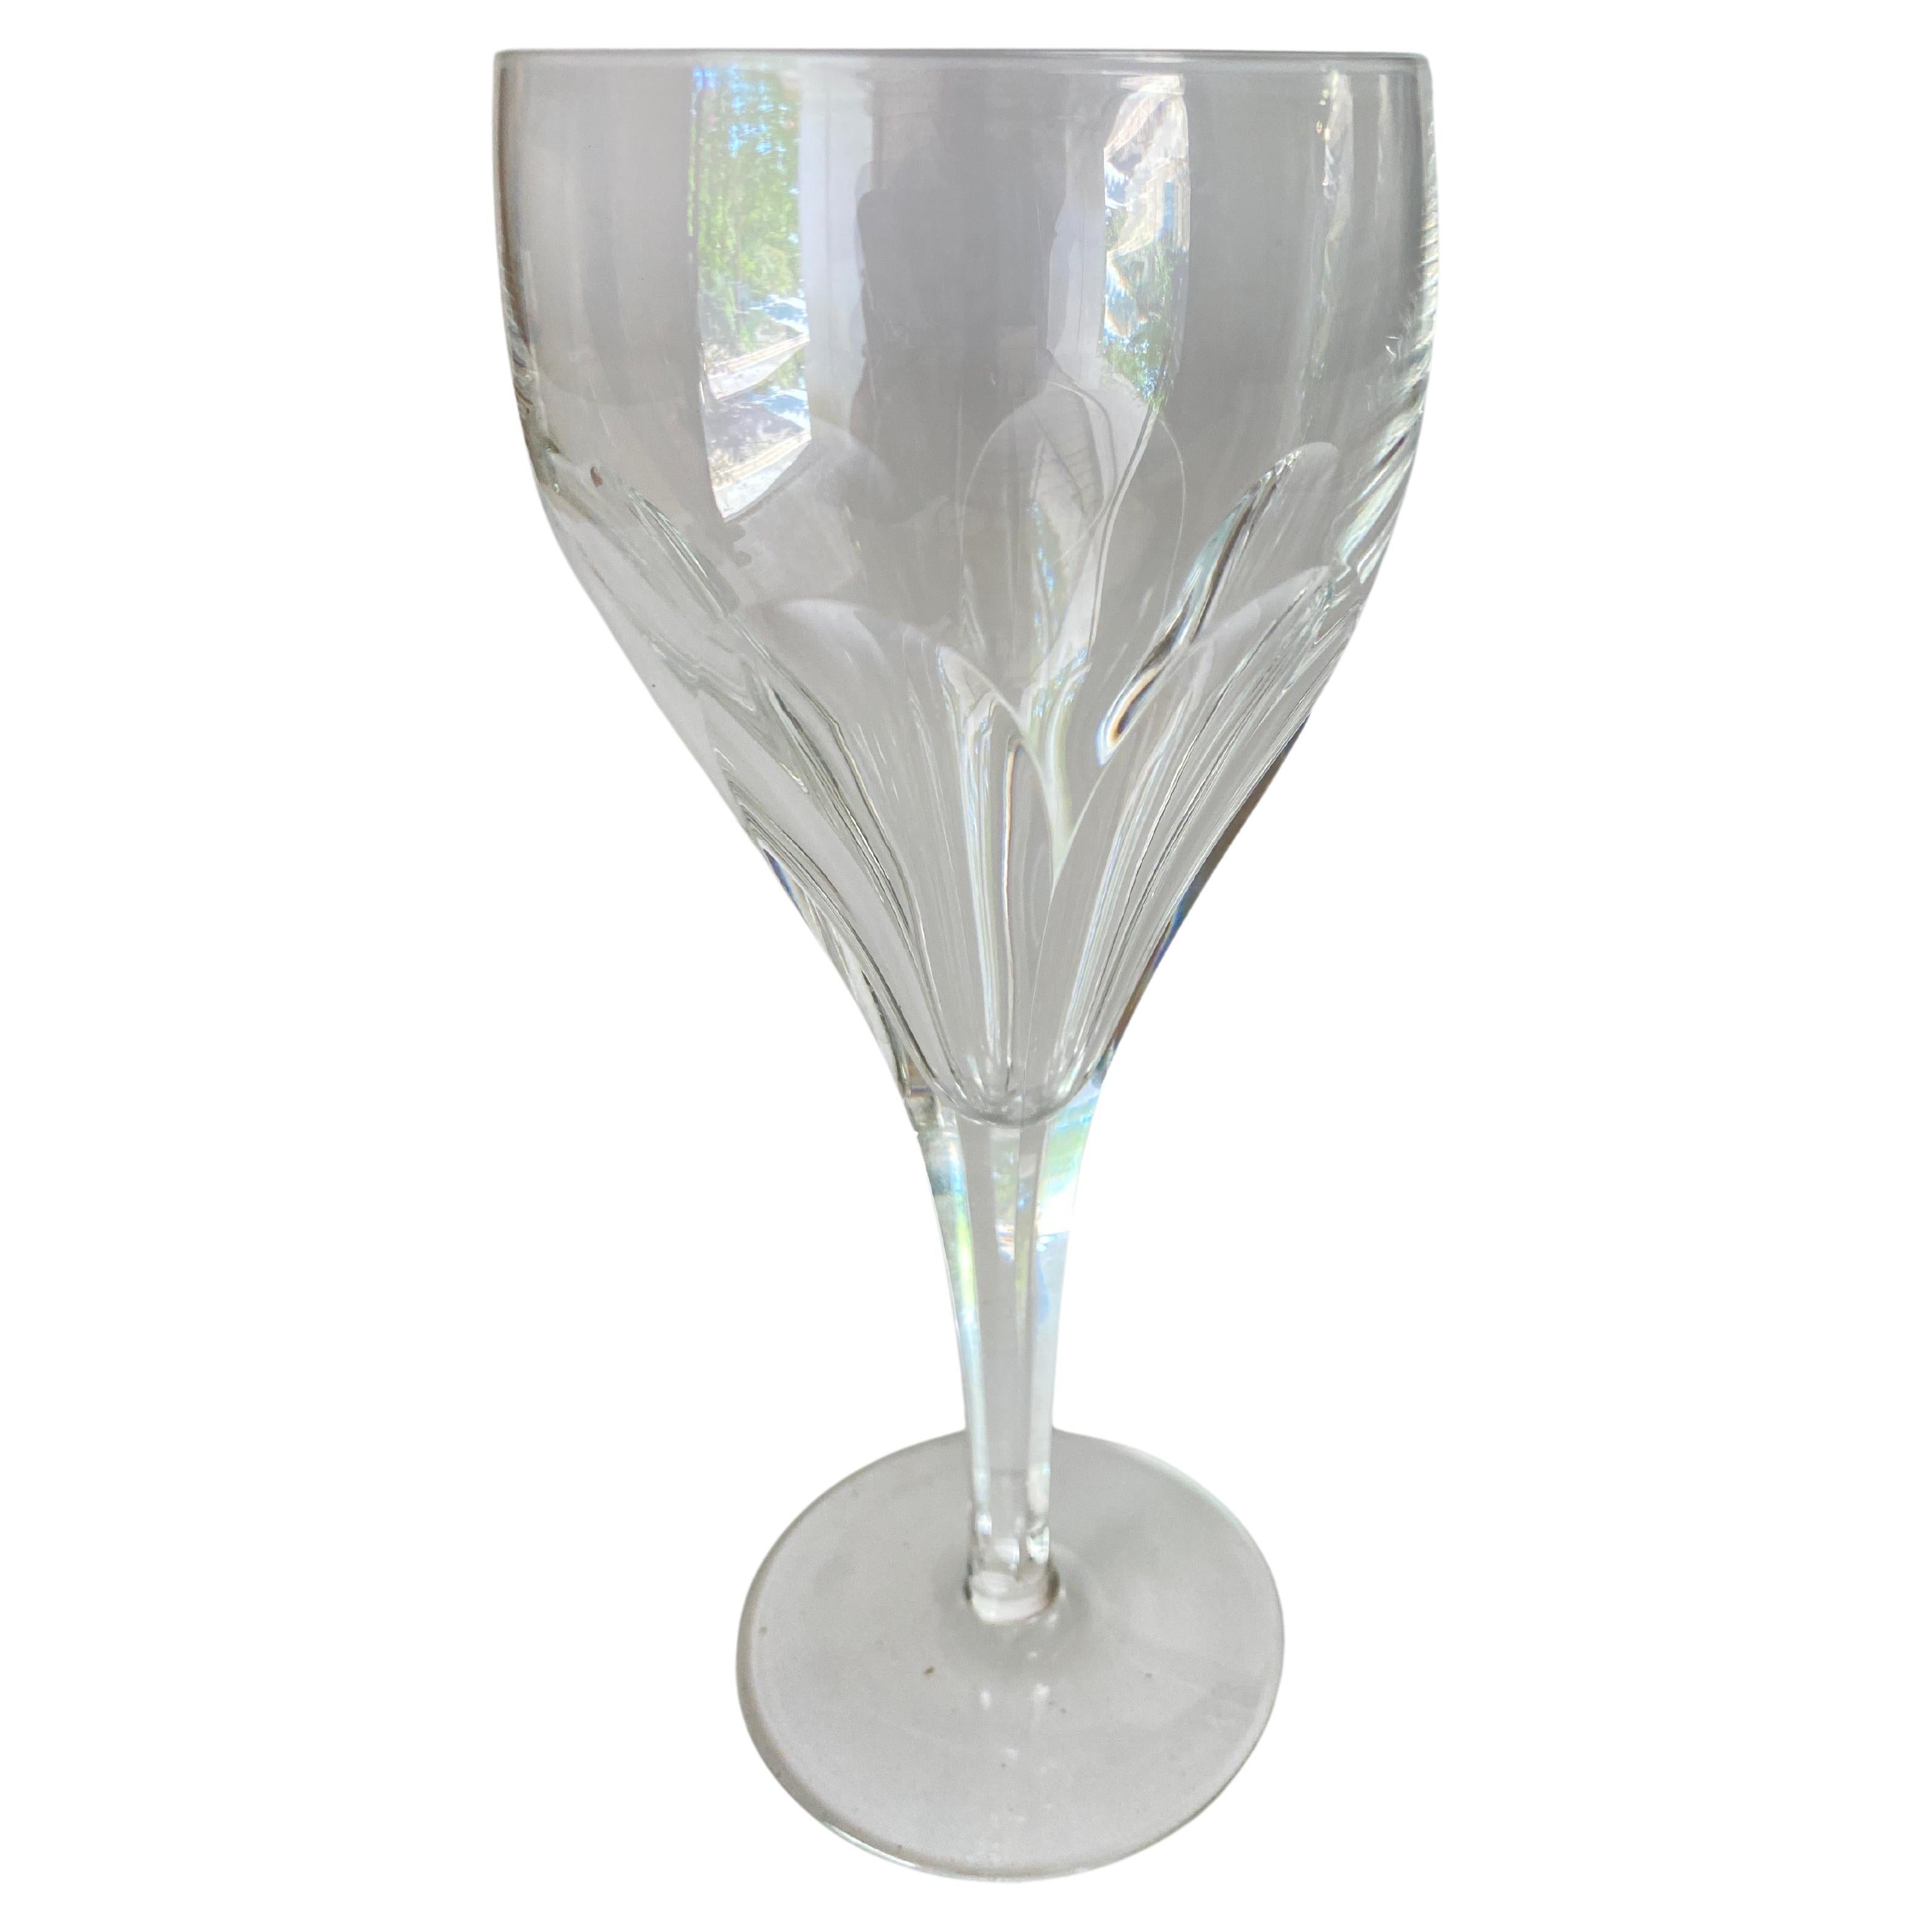 Satz von 8 Weingläsern, transparent  Farbe. Die Gläser sind mit Verzierungen versehen.
Guter Zustand. Sie sind in Kristall und haben eine elegante Form.